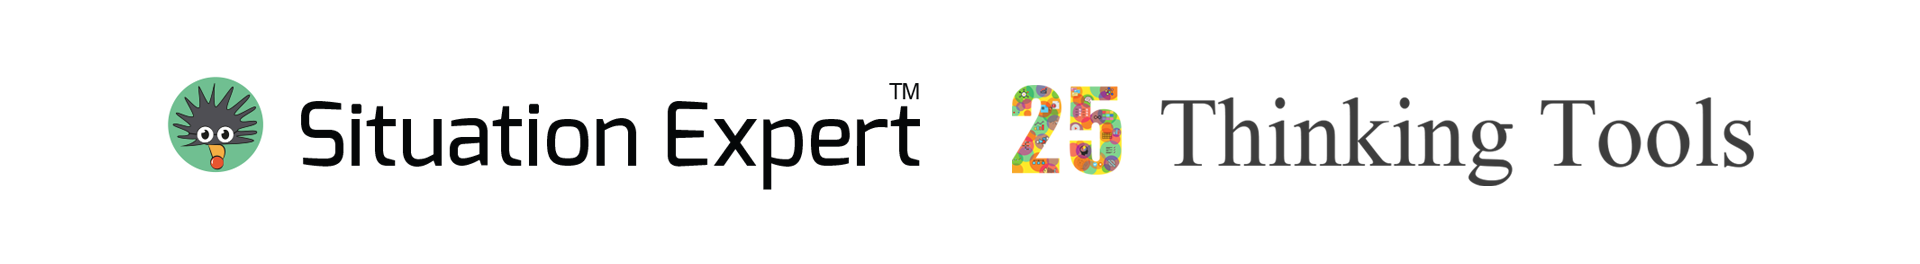 Se 25thinking logo